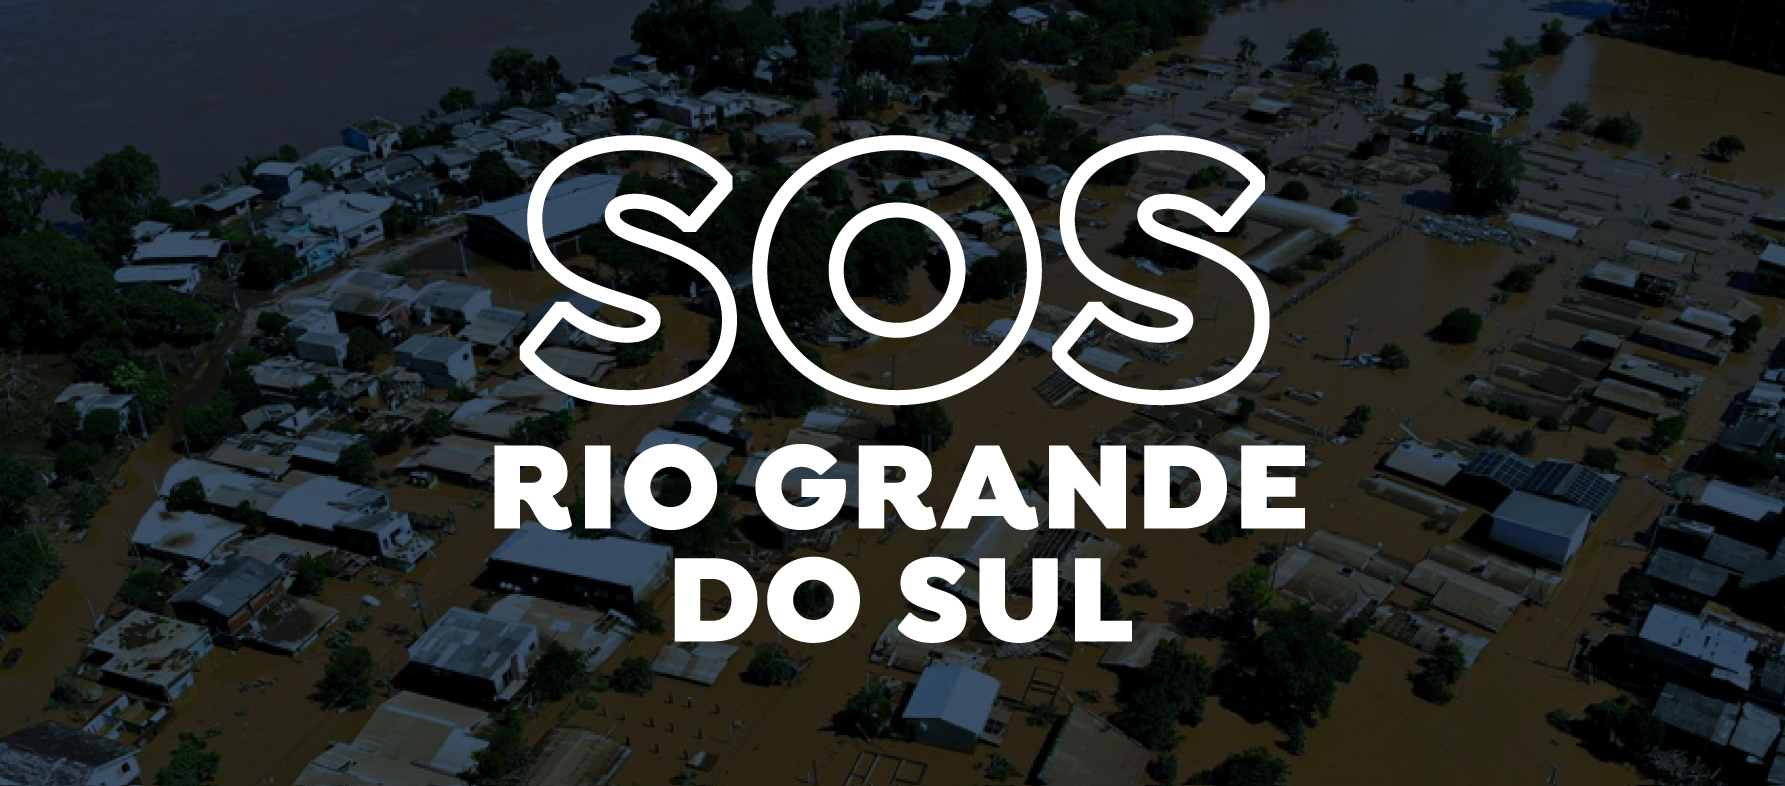 Companhias de saneamento se mobilizam para ajudar o estado do Rio Grande do Sul